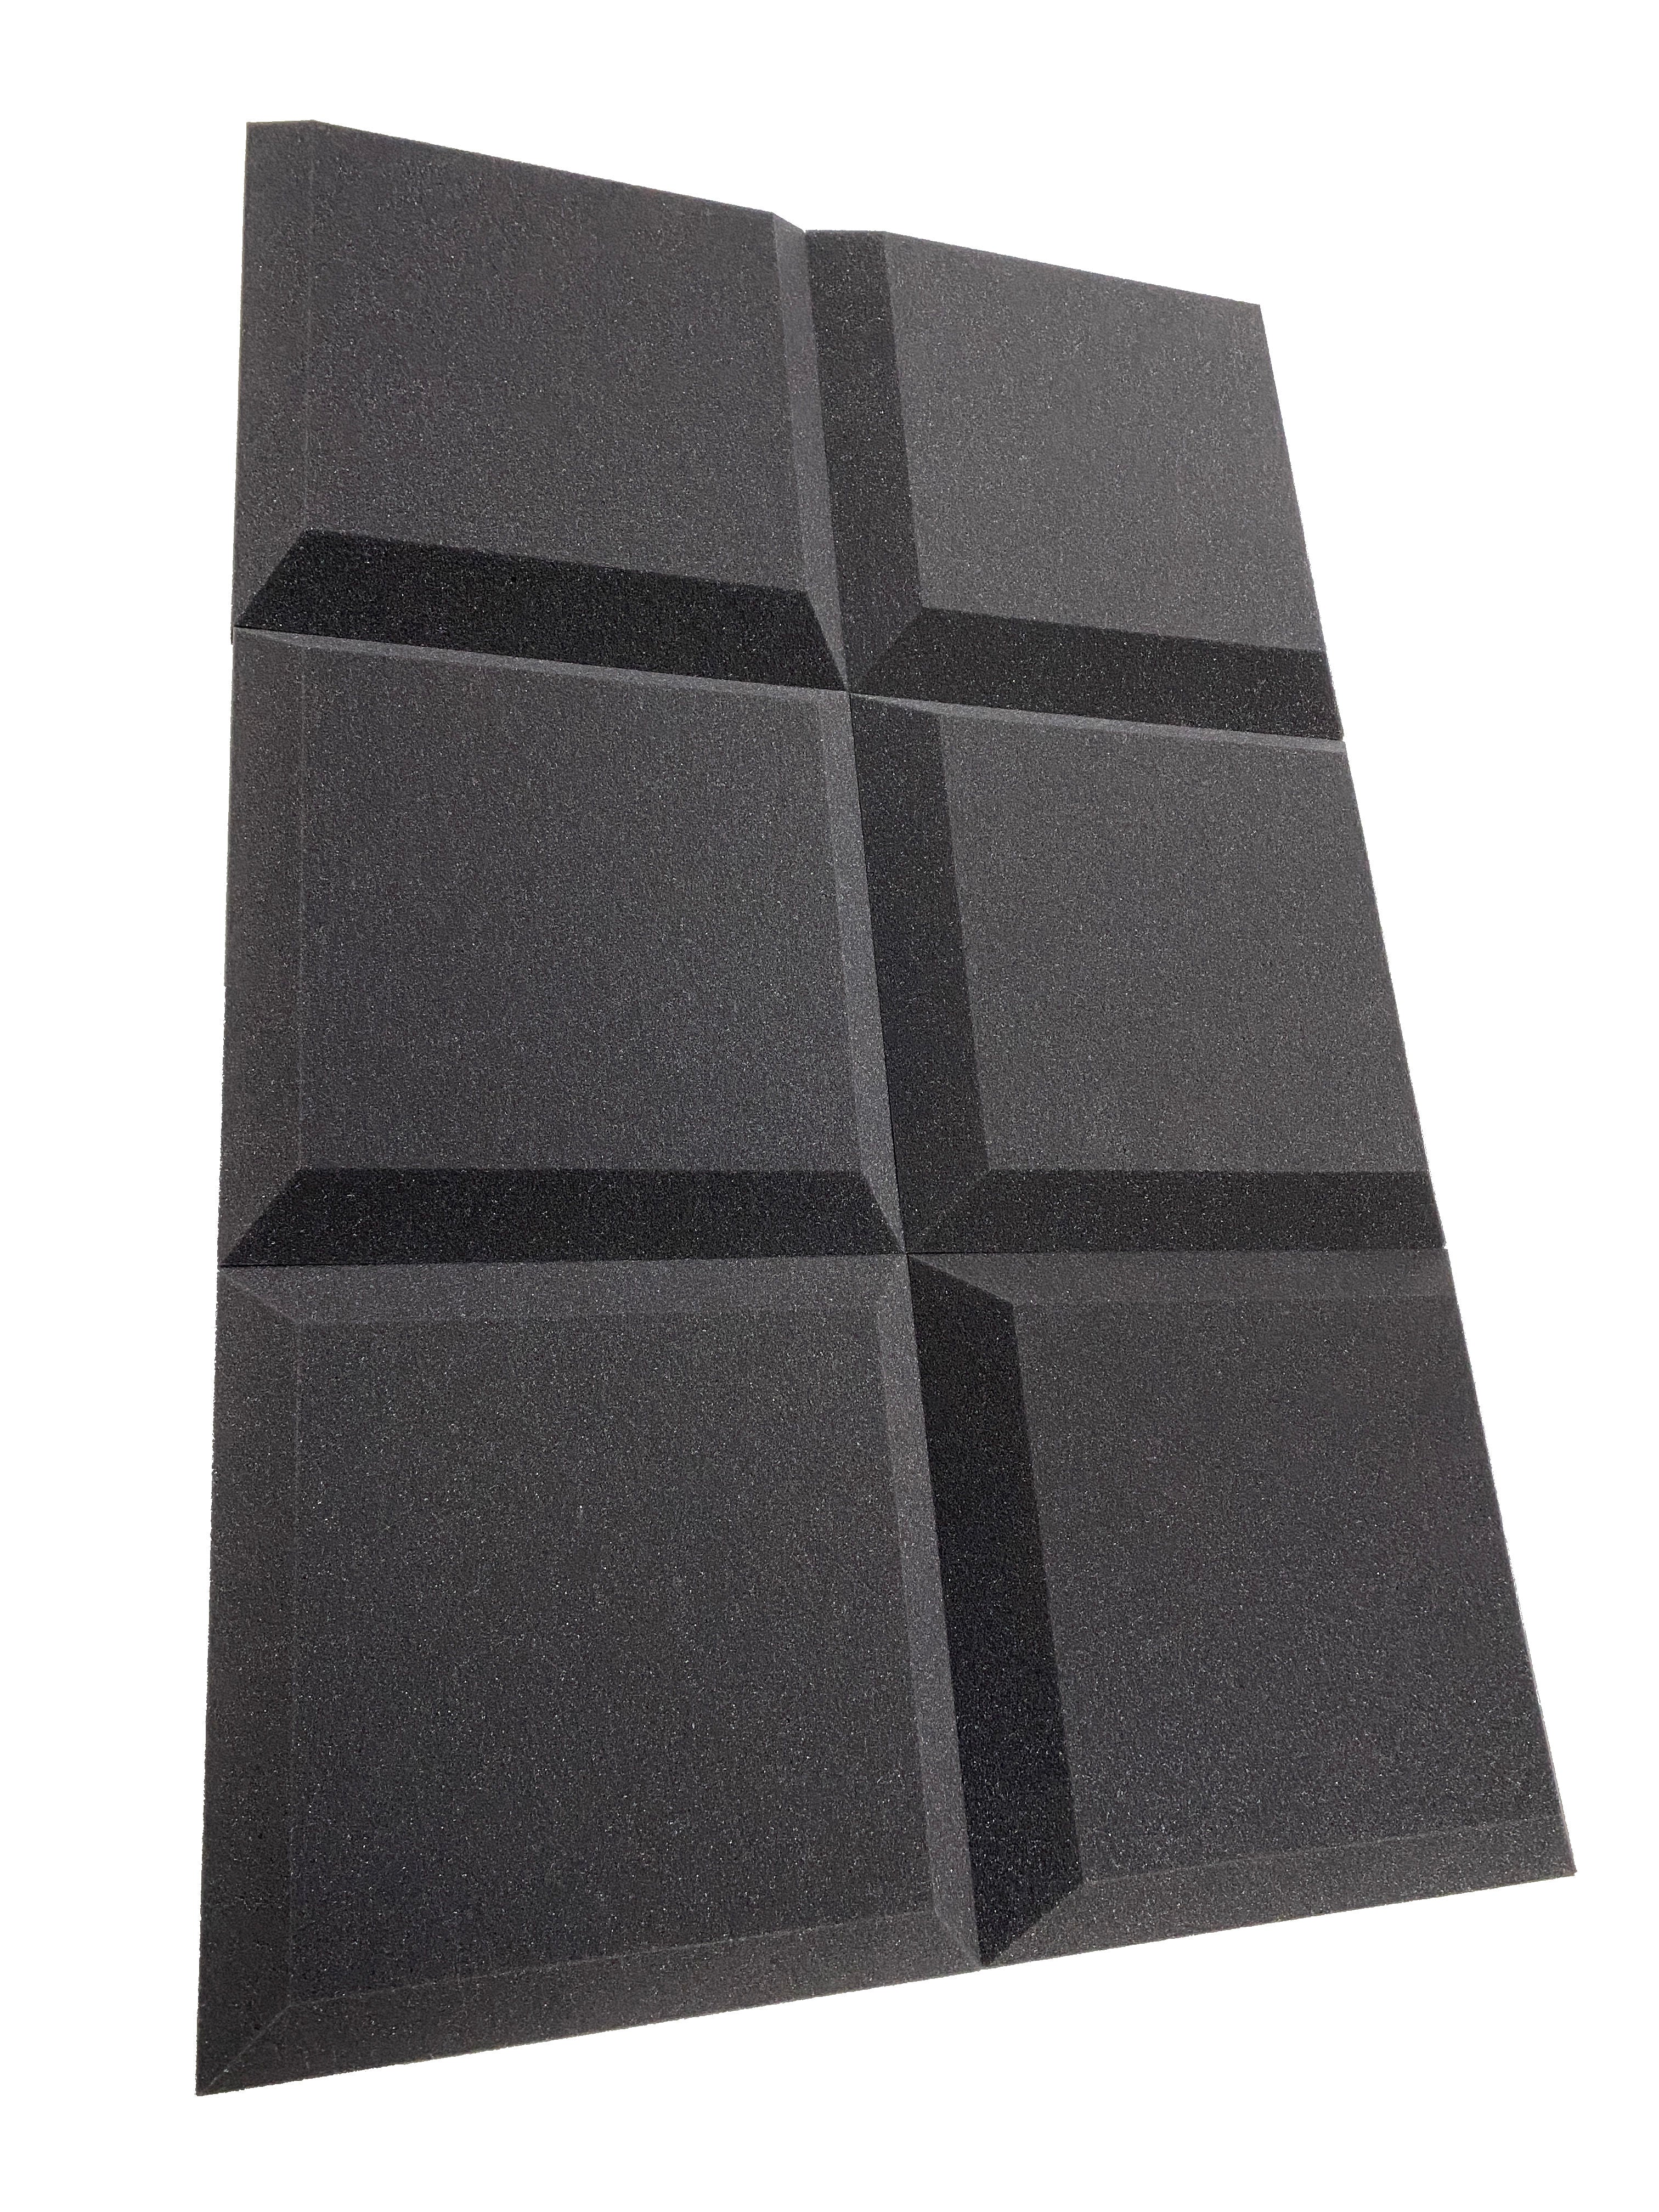 Tegular 12" Acoustic Studio Foam Tile Pack – 12 Tiles, 1.1qm Coverage-12